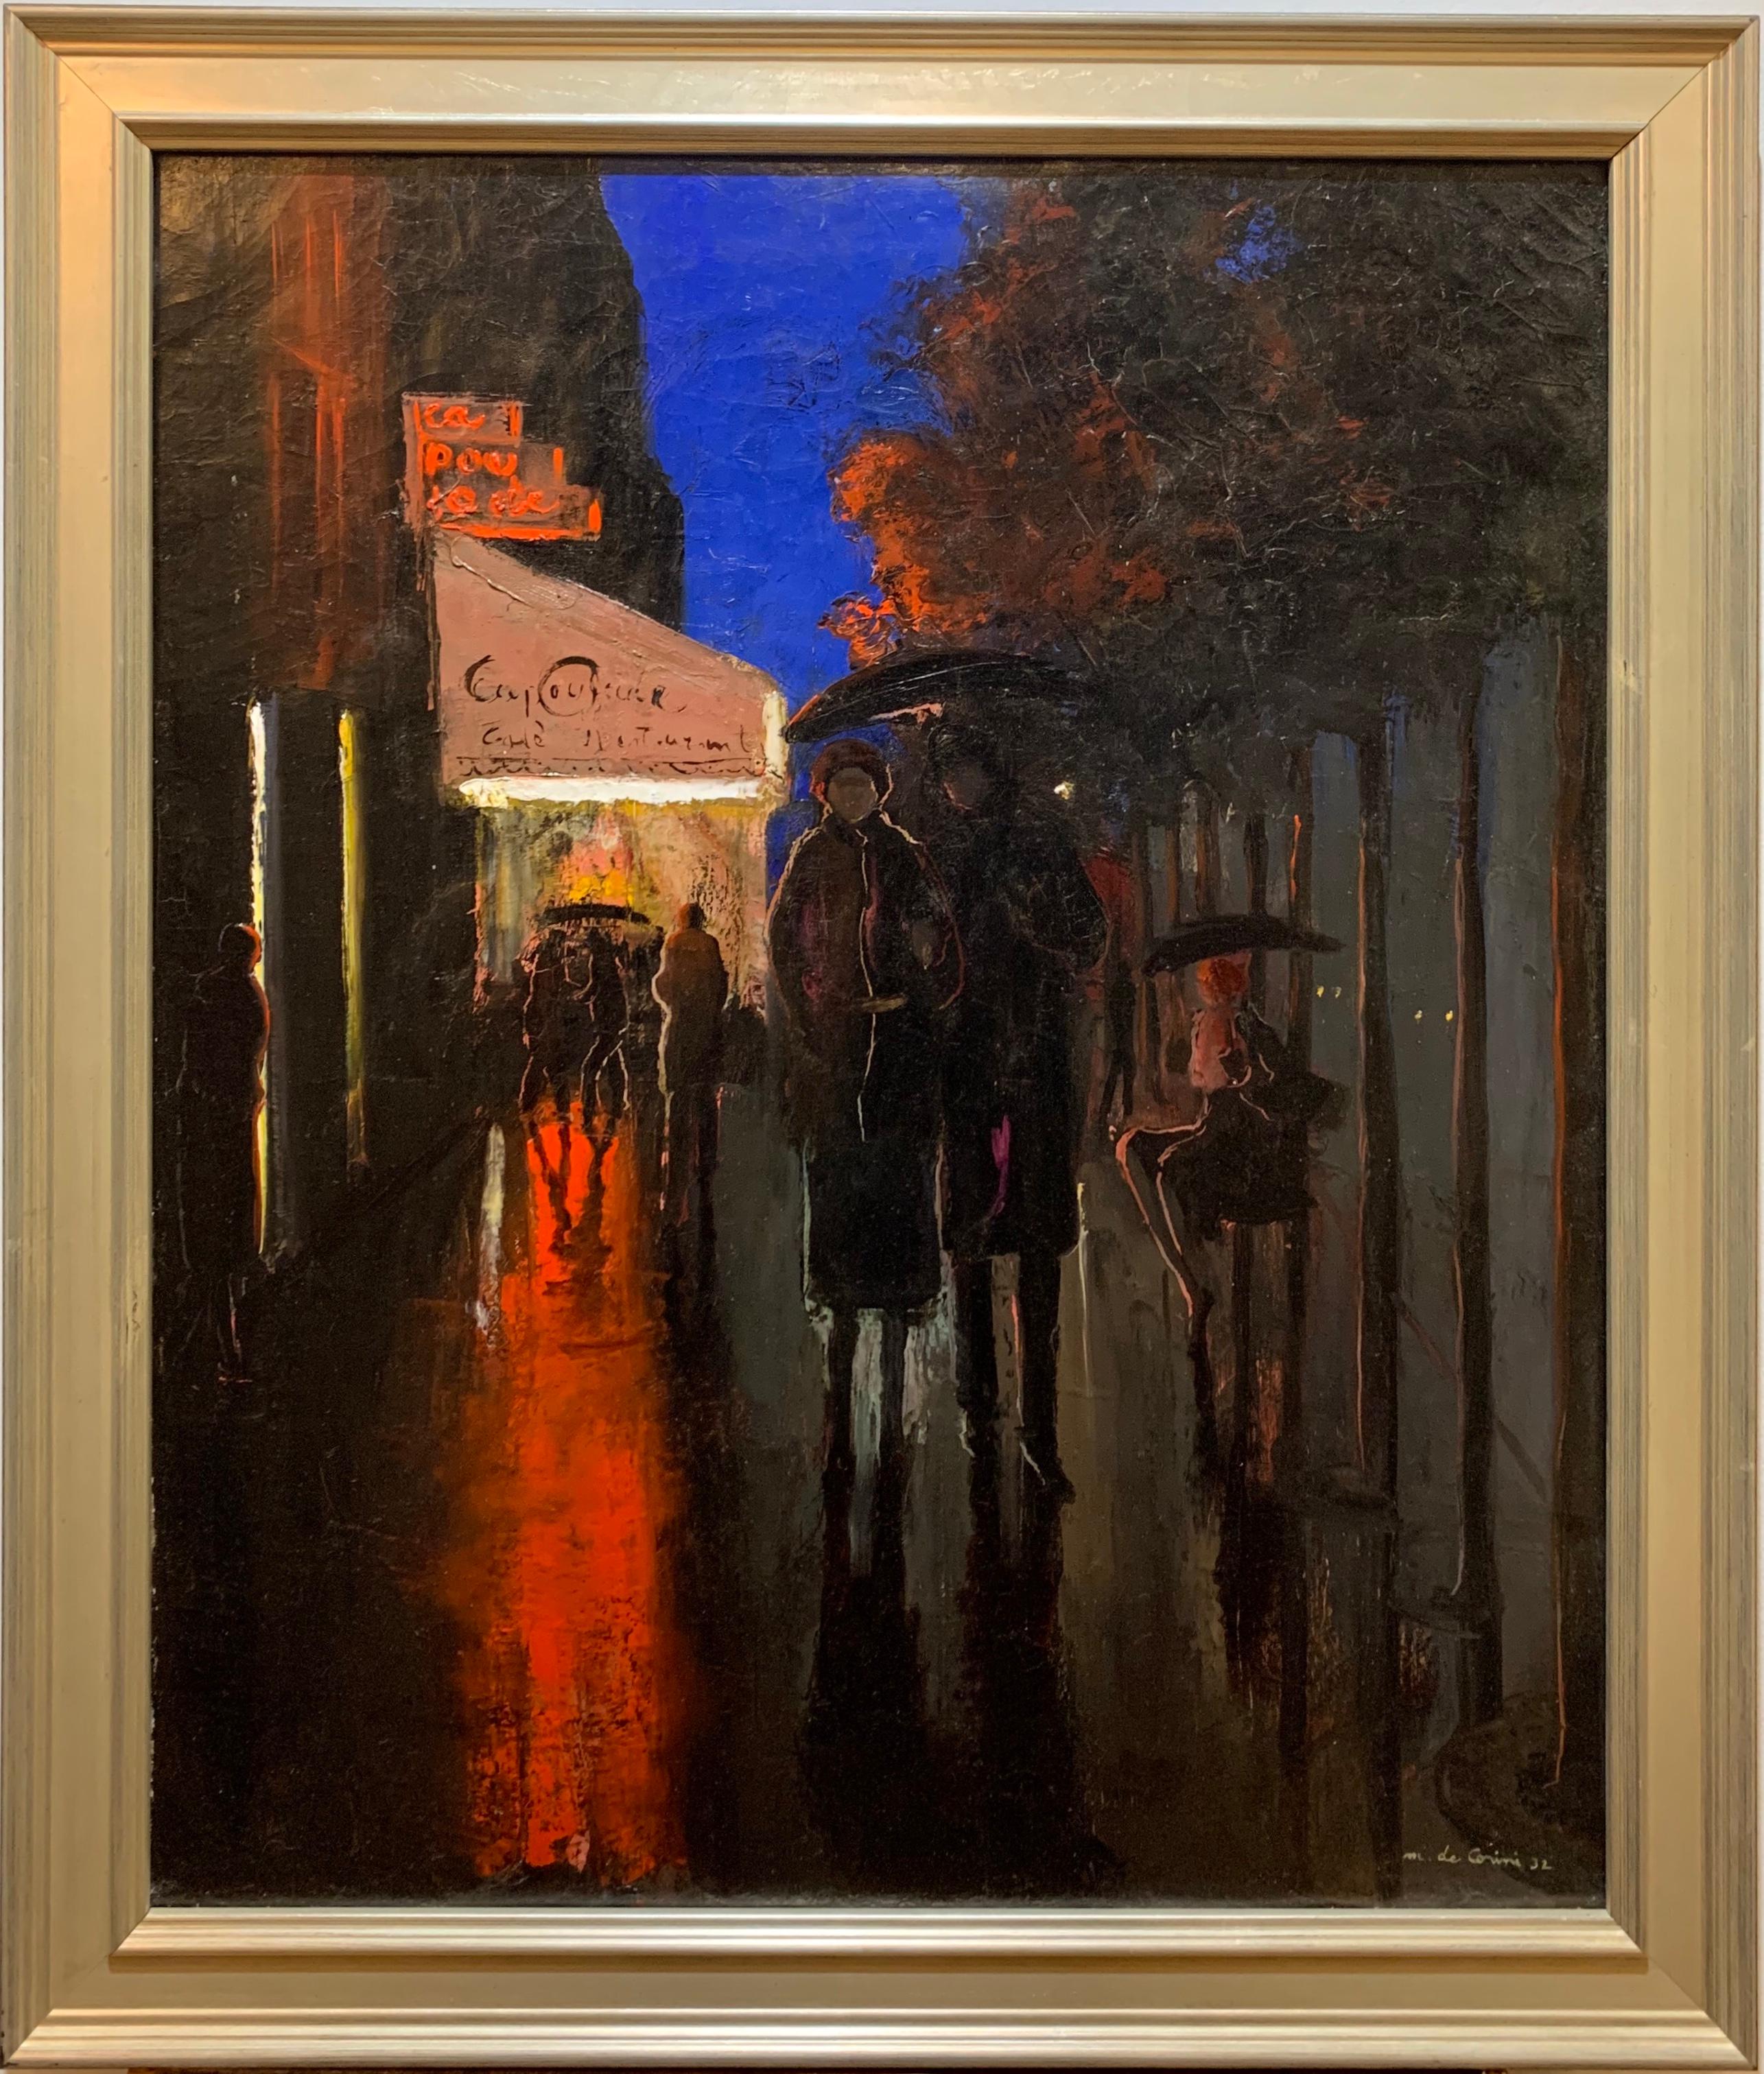 Artiste féminine américaine née en Hongrie, Margaret  De Corini (1897-1982) est connue pour ses magnifiques peintures de style impressionniste et ce tableau est le meilleur exemple de son travail. 
Le tableau représente une rue parisienne avec des